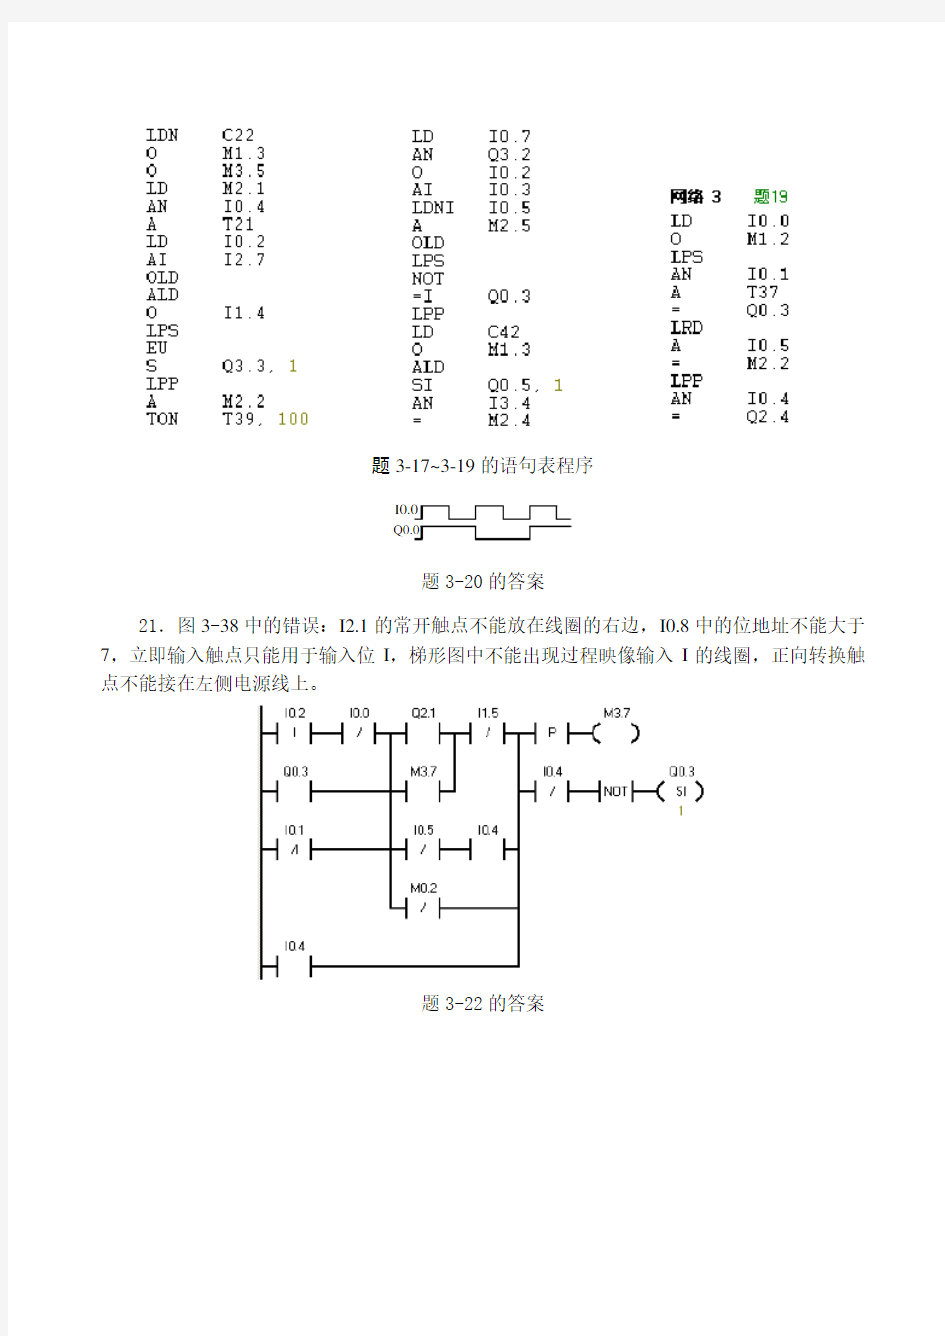 S7-200 PLC编程及应用(廖常初第2版)习题参考答案